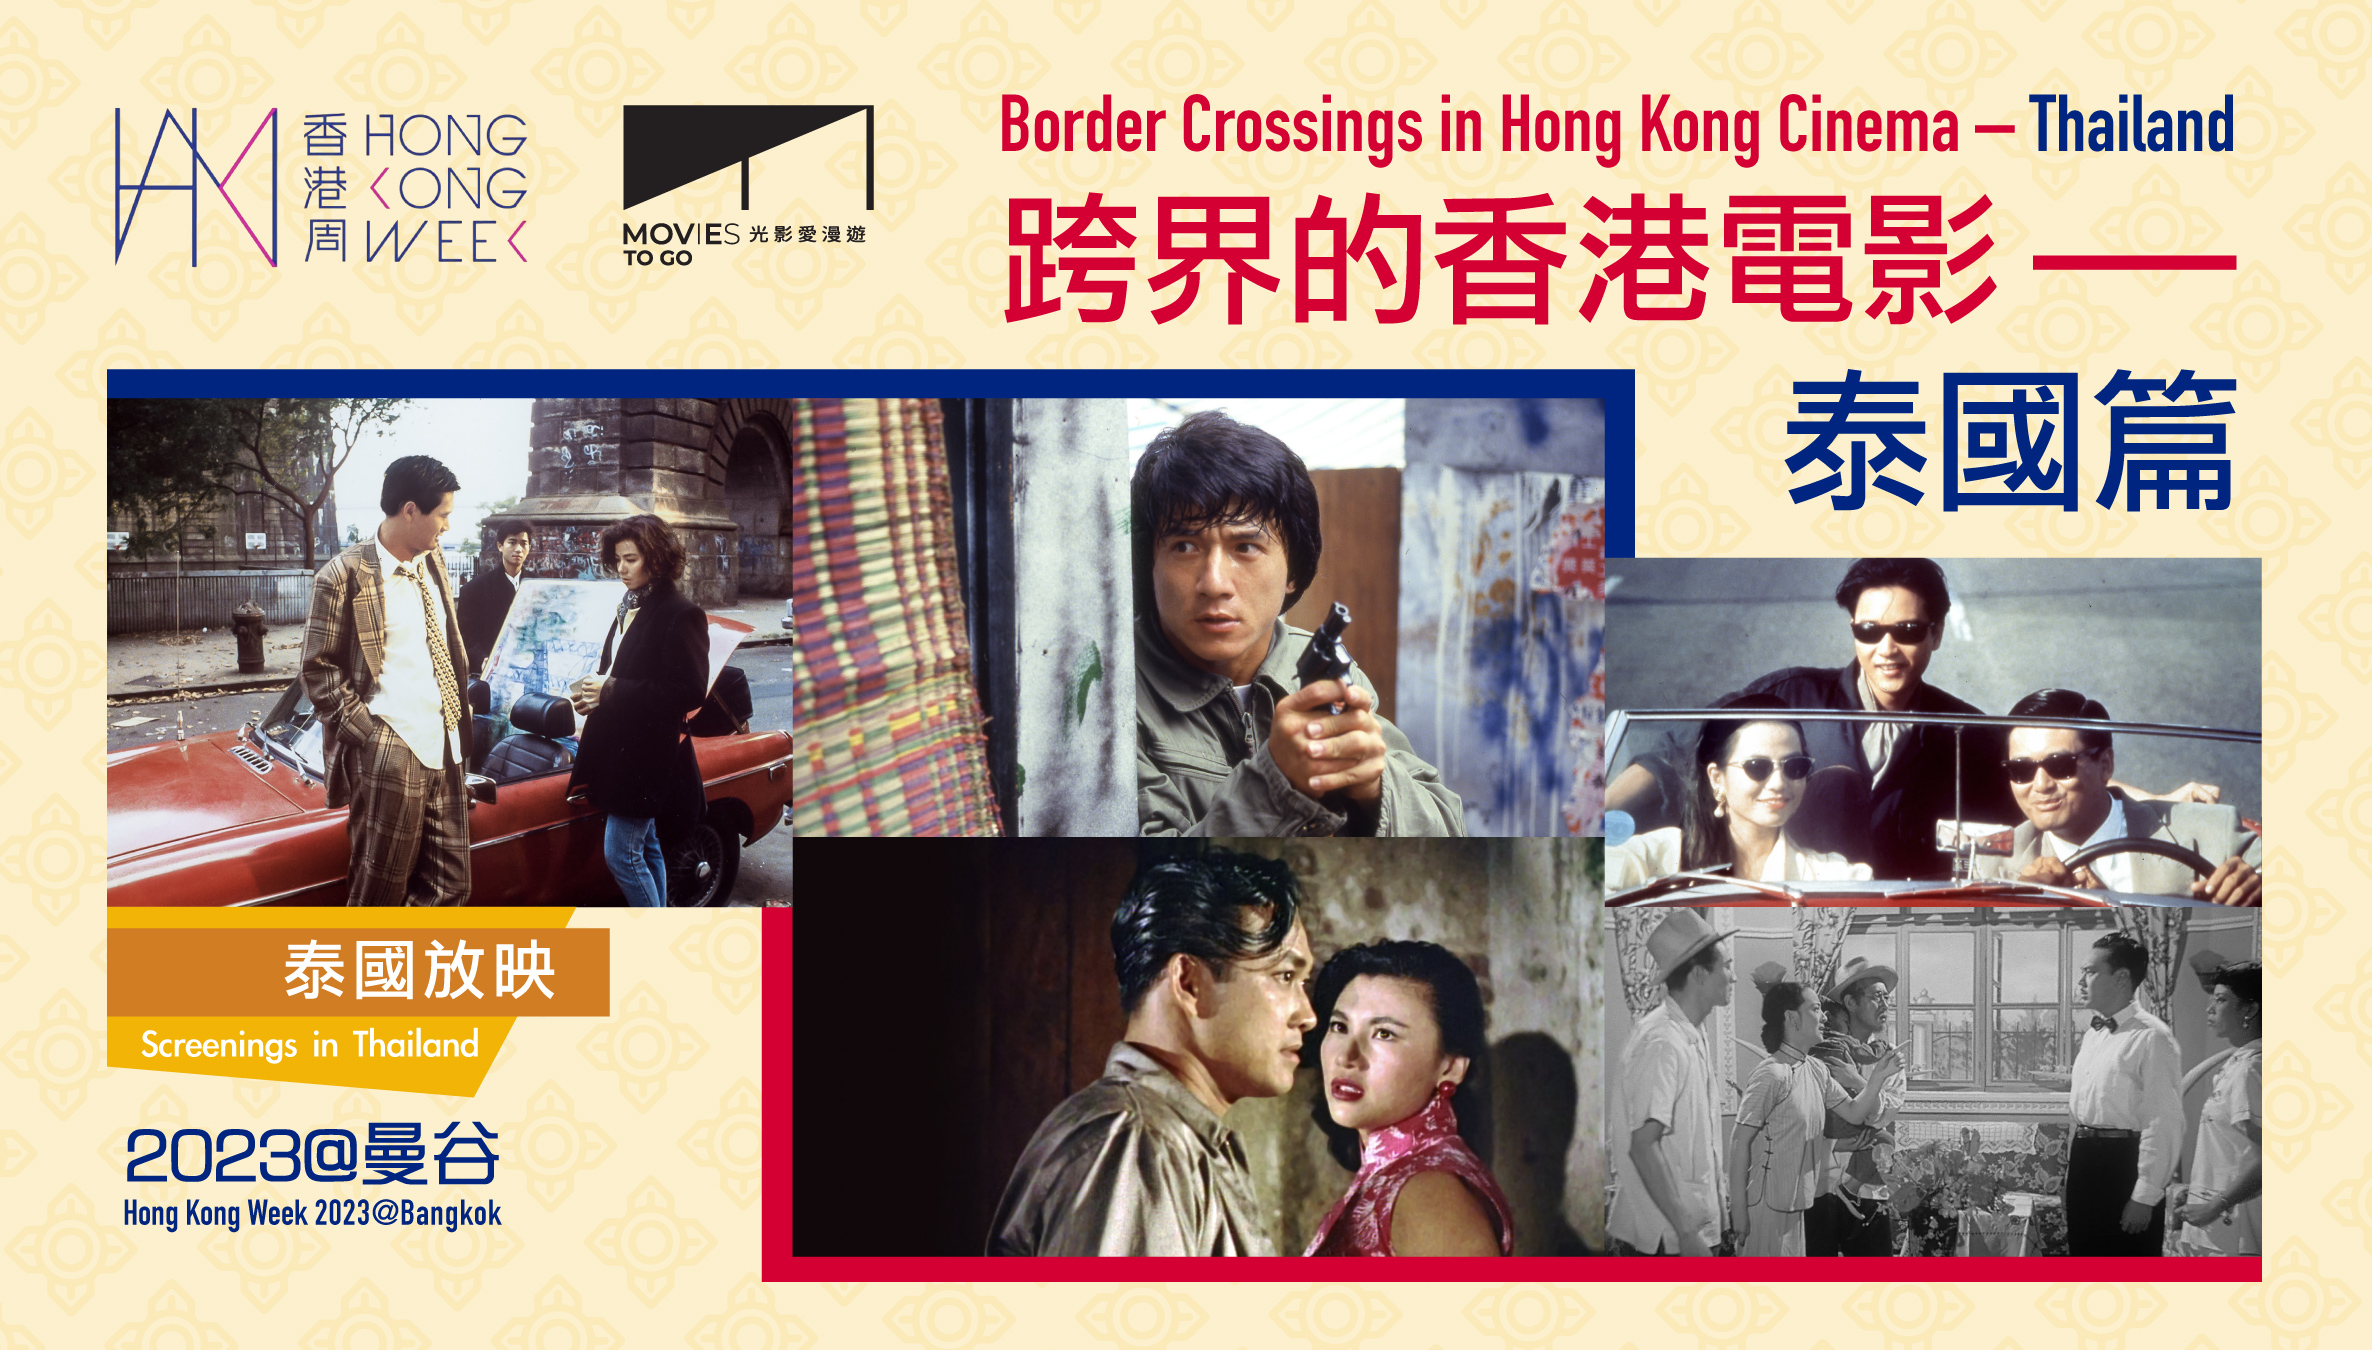 【光影愛漫遊】香港周2023@曼谷——跨界的香港電影——泰國篇 (放映) (10/11/2023-12/11/2023)